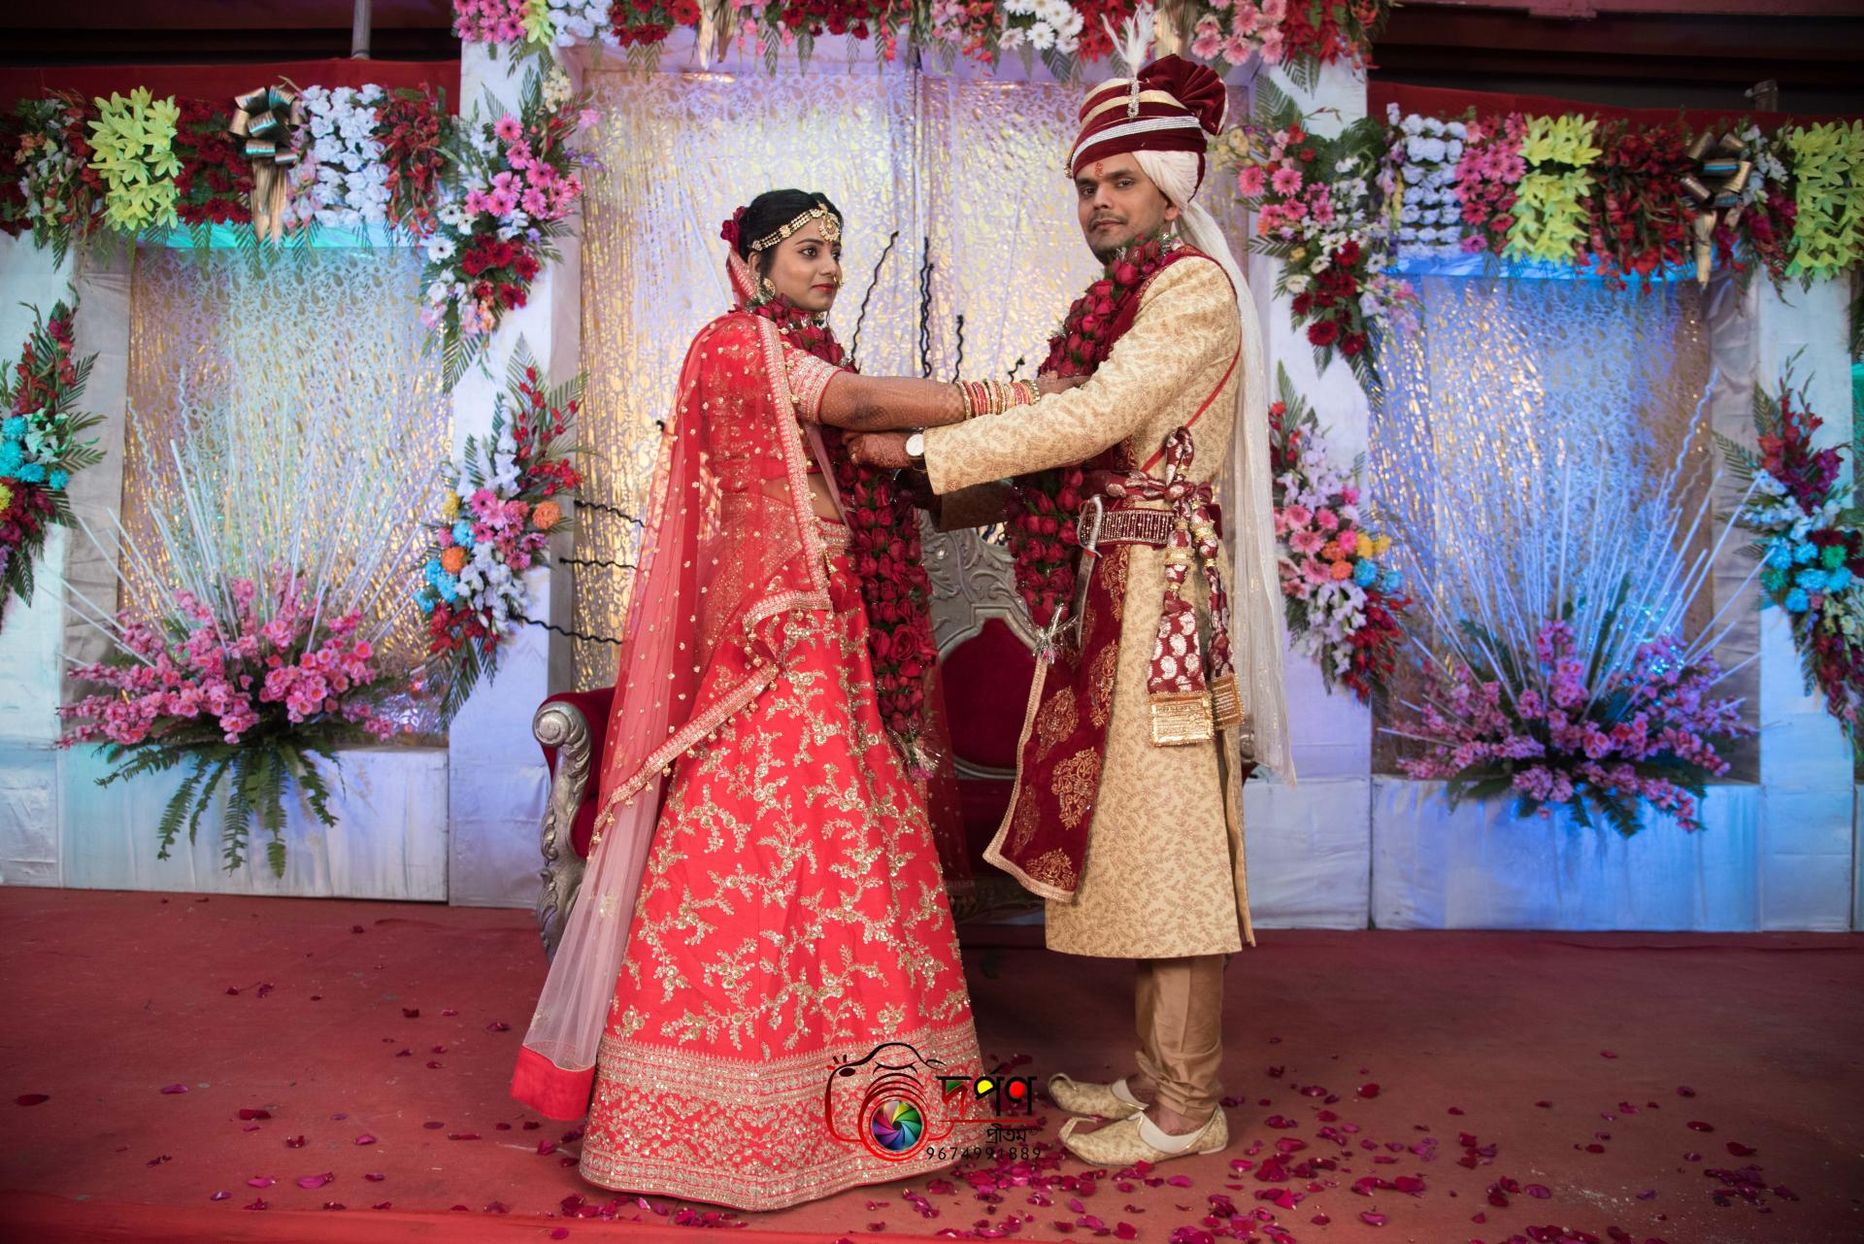 Palju õnne pulmapäevaks, Nimit ja Aditi!